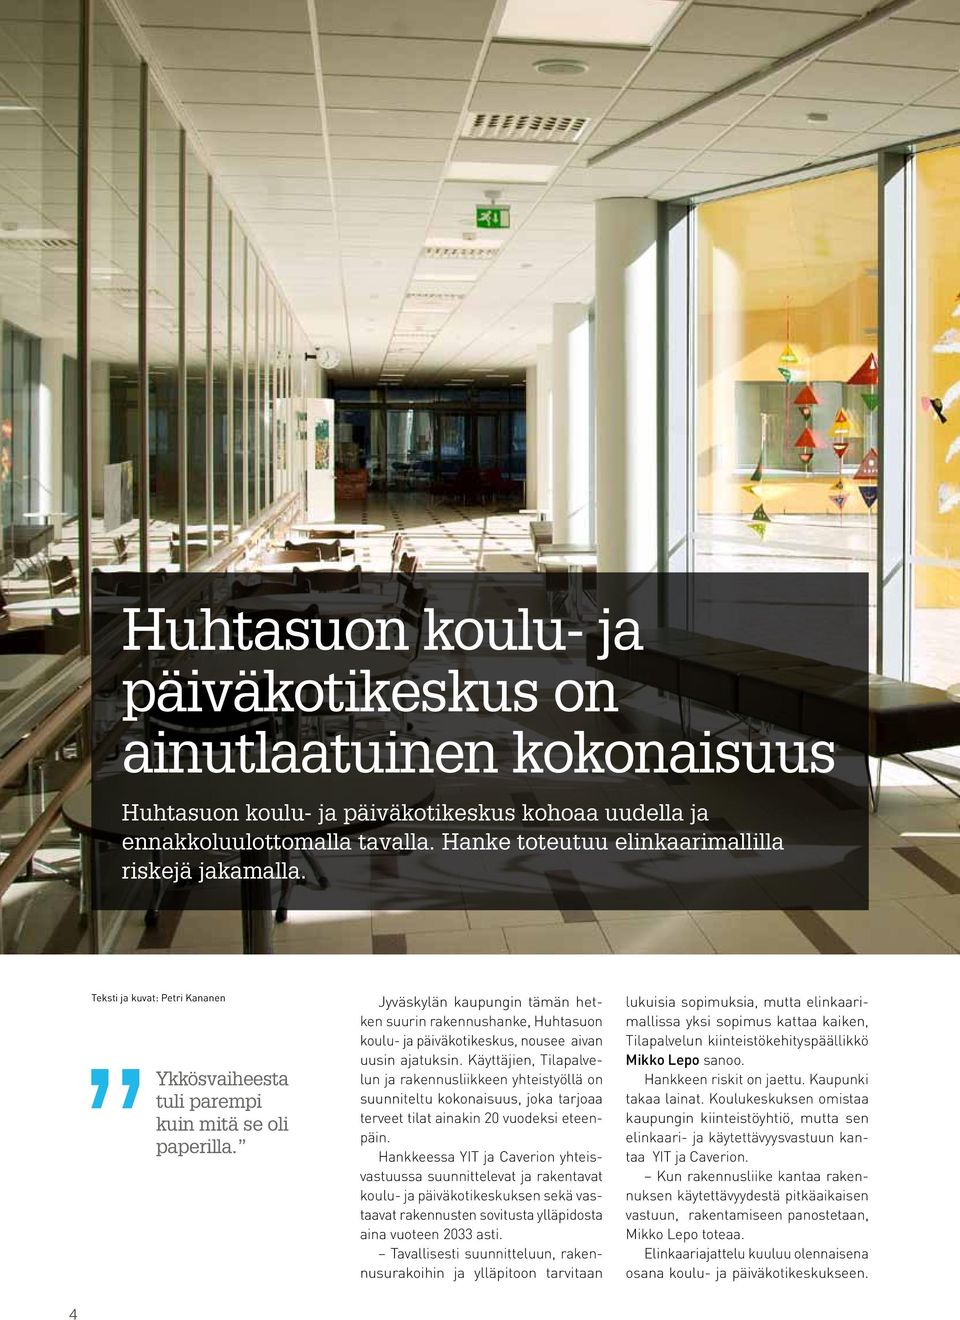 Jyväskylän kaupungin tämän hetken suurin rakennushanke, Huhtasuon koulu- ja päiväkotikeskus, nousee aivan uusin ajatuksin.